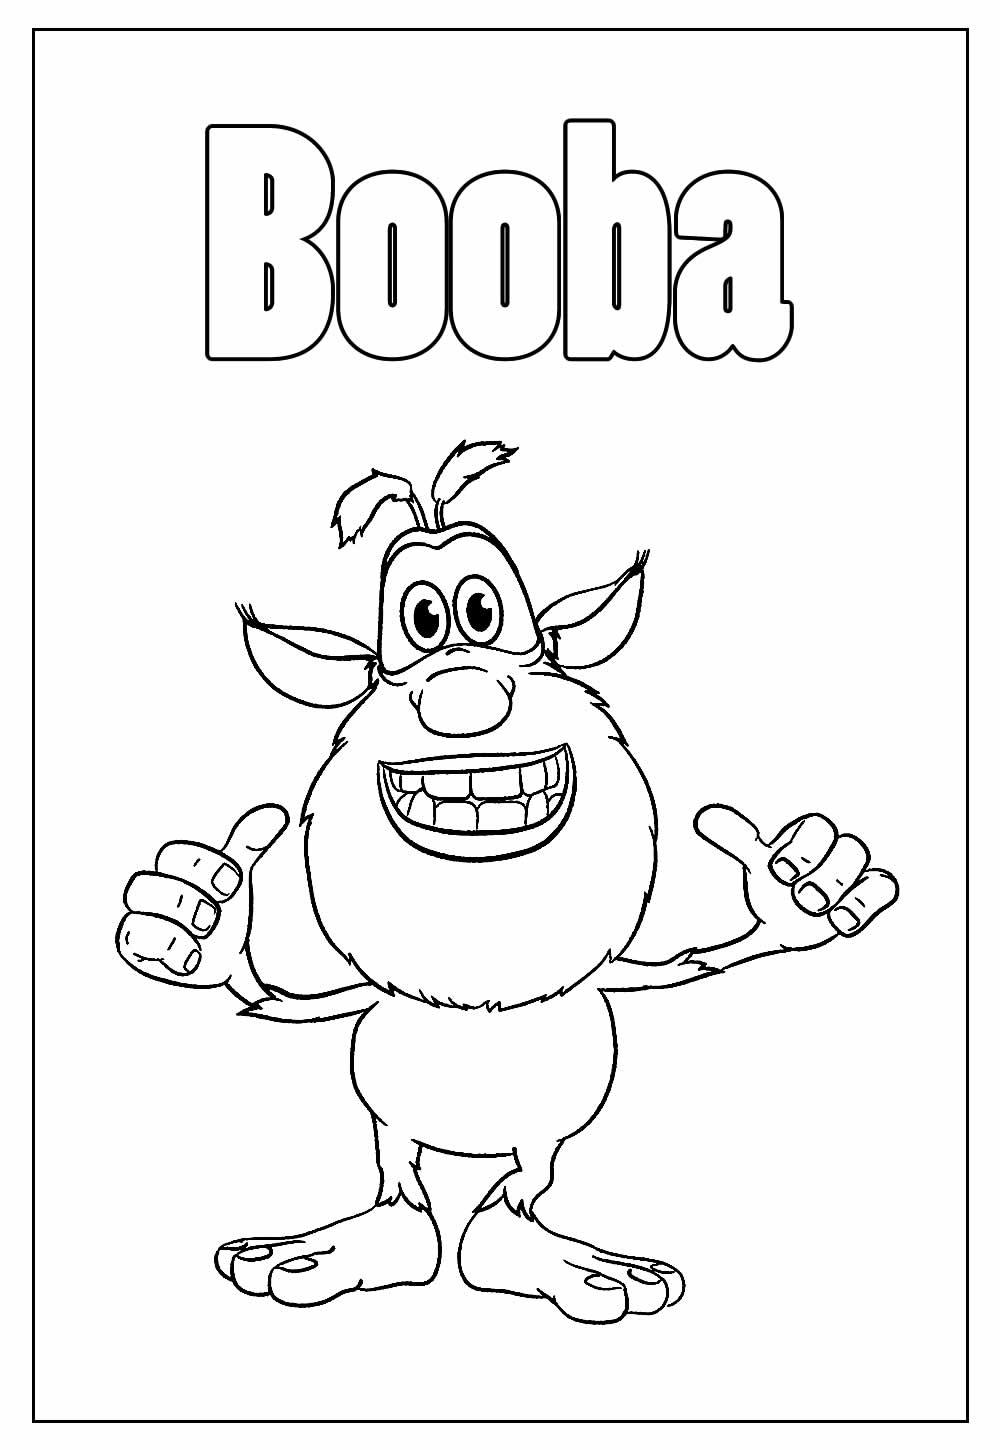 Desenho Educativo de Booba para colorir